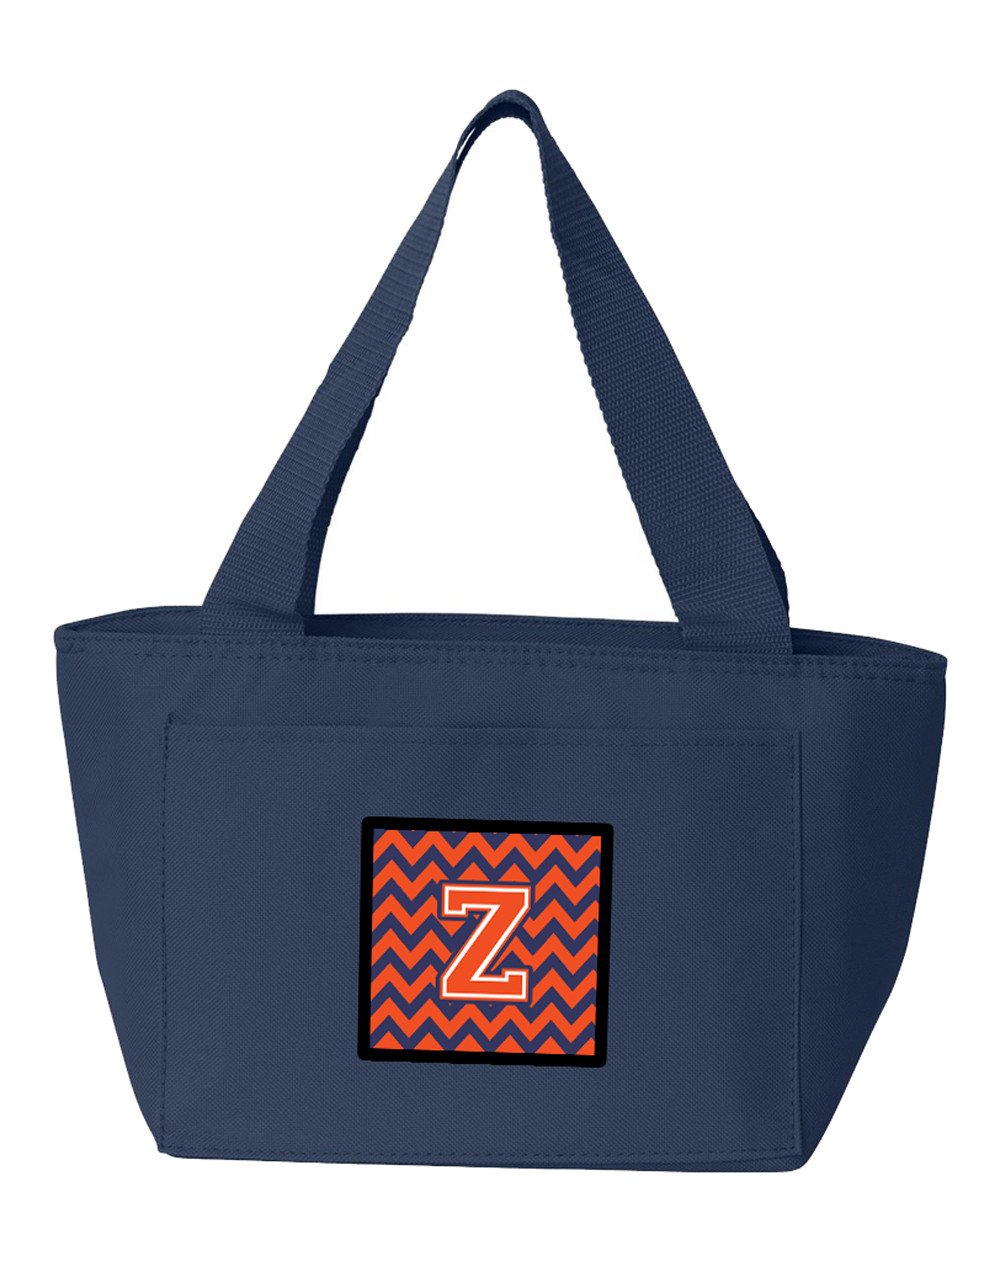 Letter Z Chevron Orange and Blue Lunch Bag CJ1042-ZNA-8808 by Caroline's Treasures